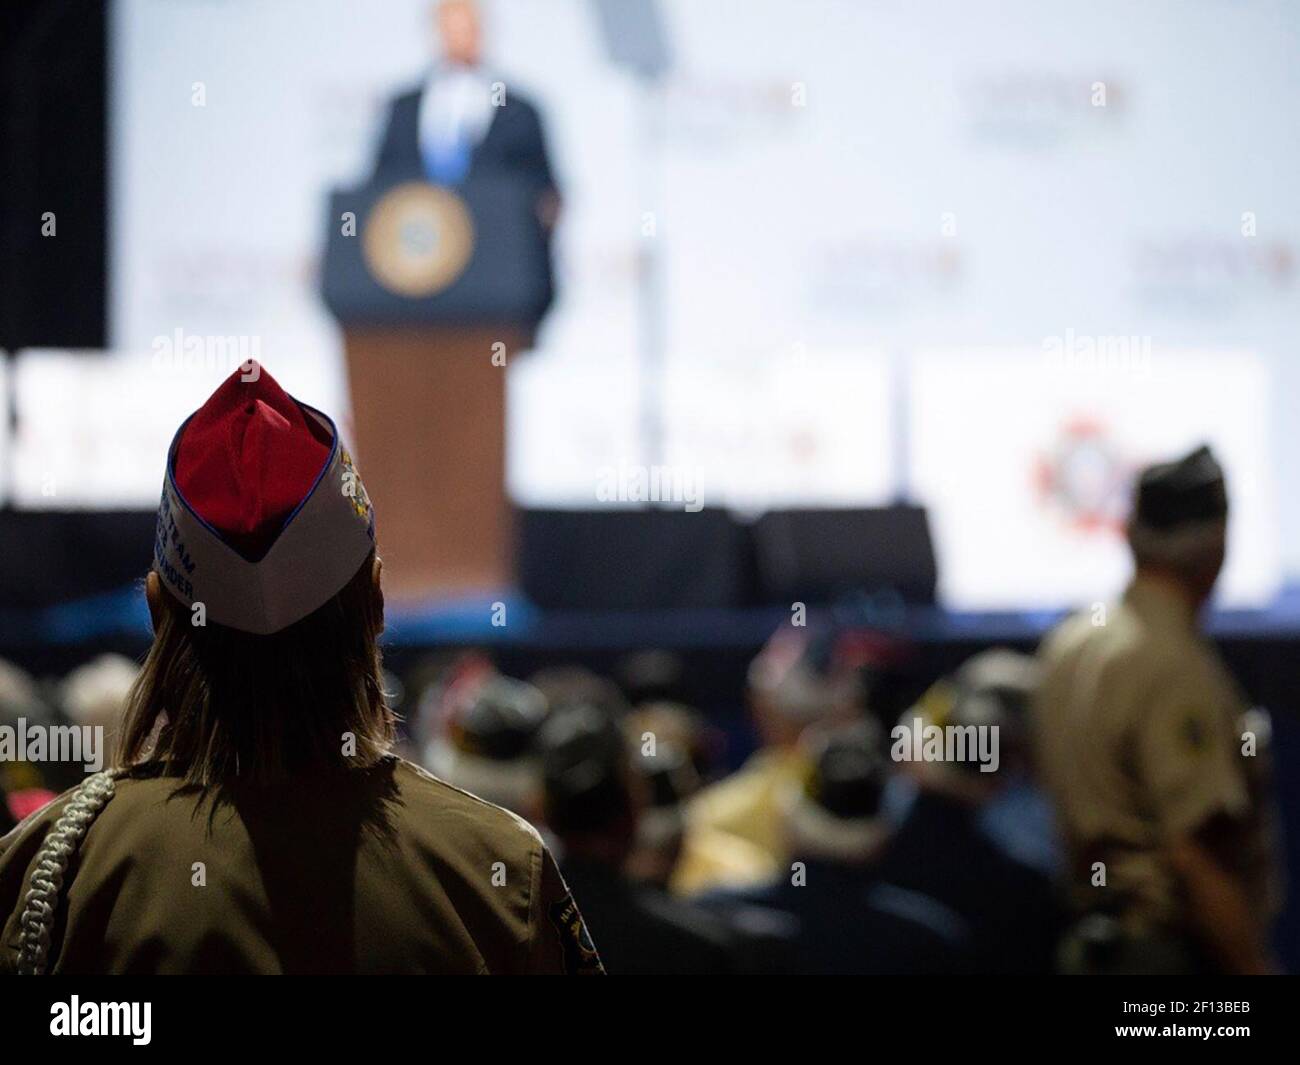 Le président Donald Trump prononce un discours lors de la conférence nationale des anciens combattants des guerres étrangères à Kansas City, Missouri, le 24 2018 juillet. Banque D'Images